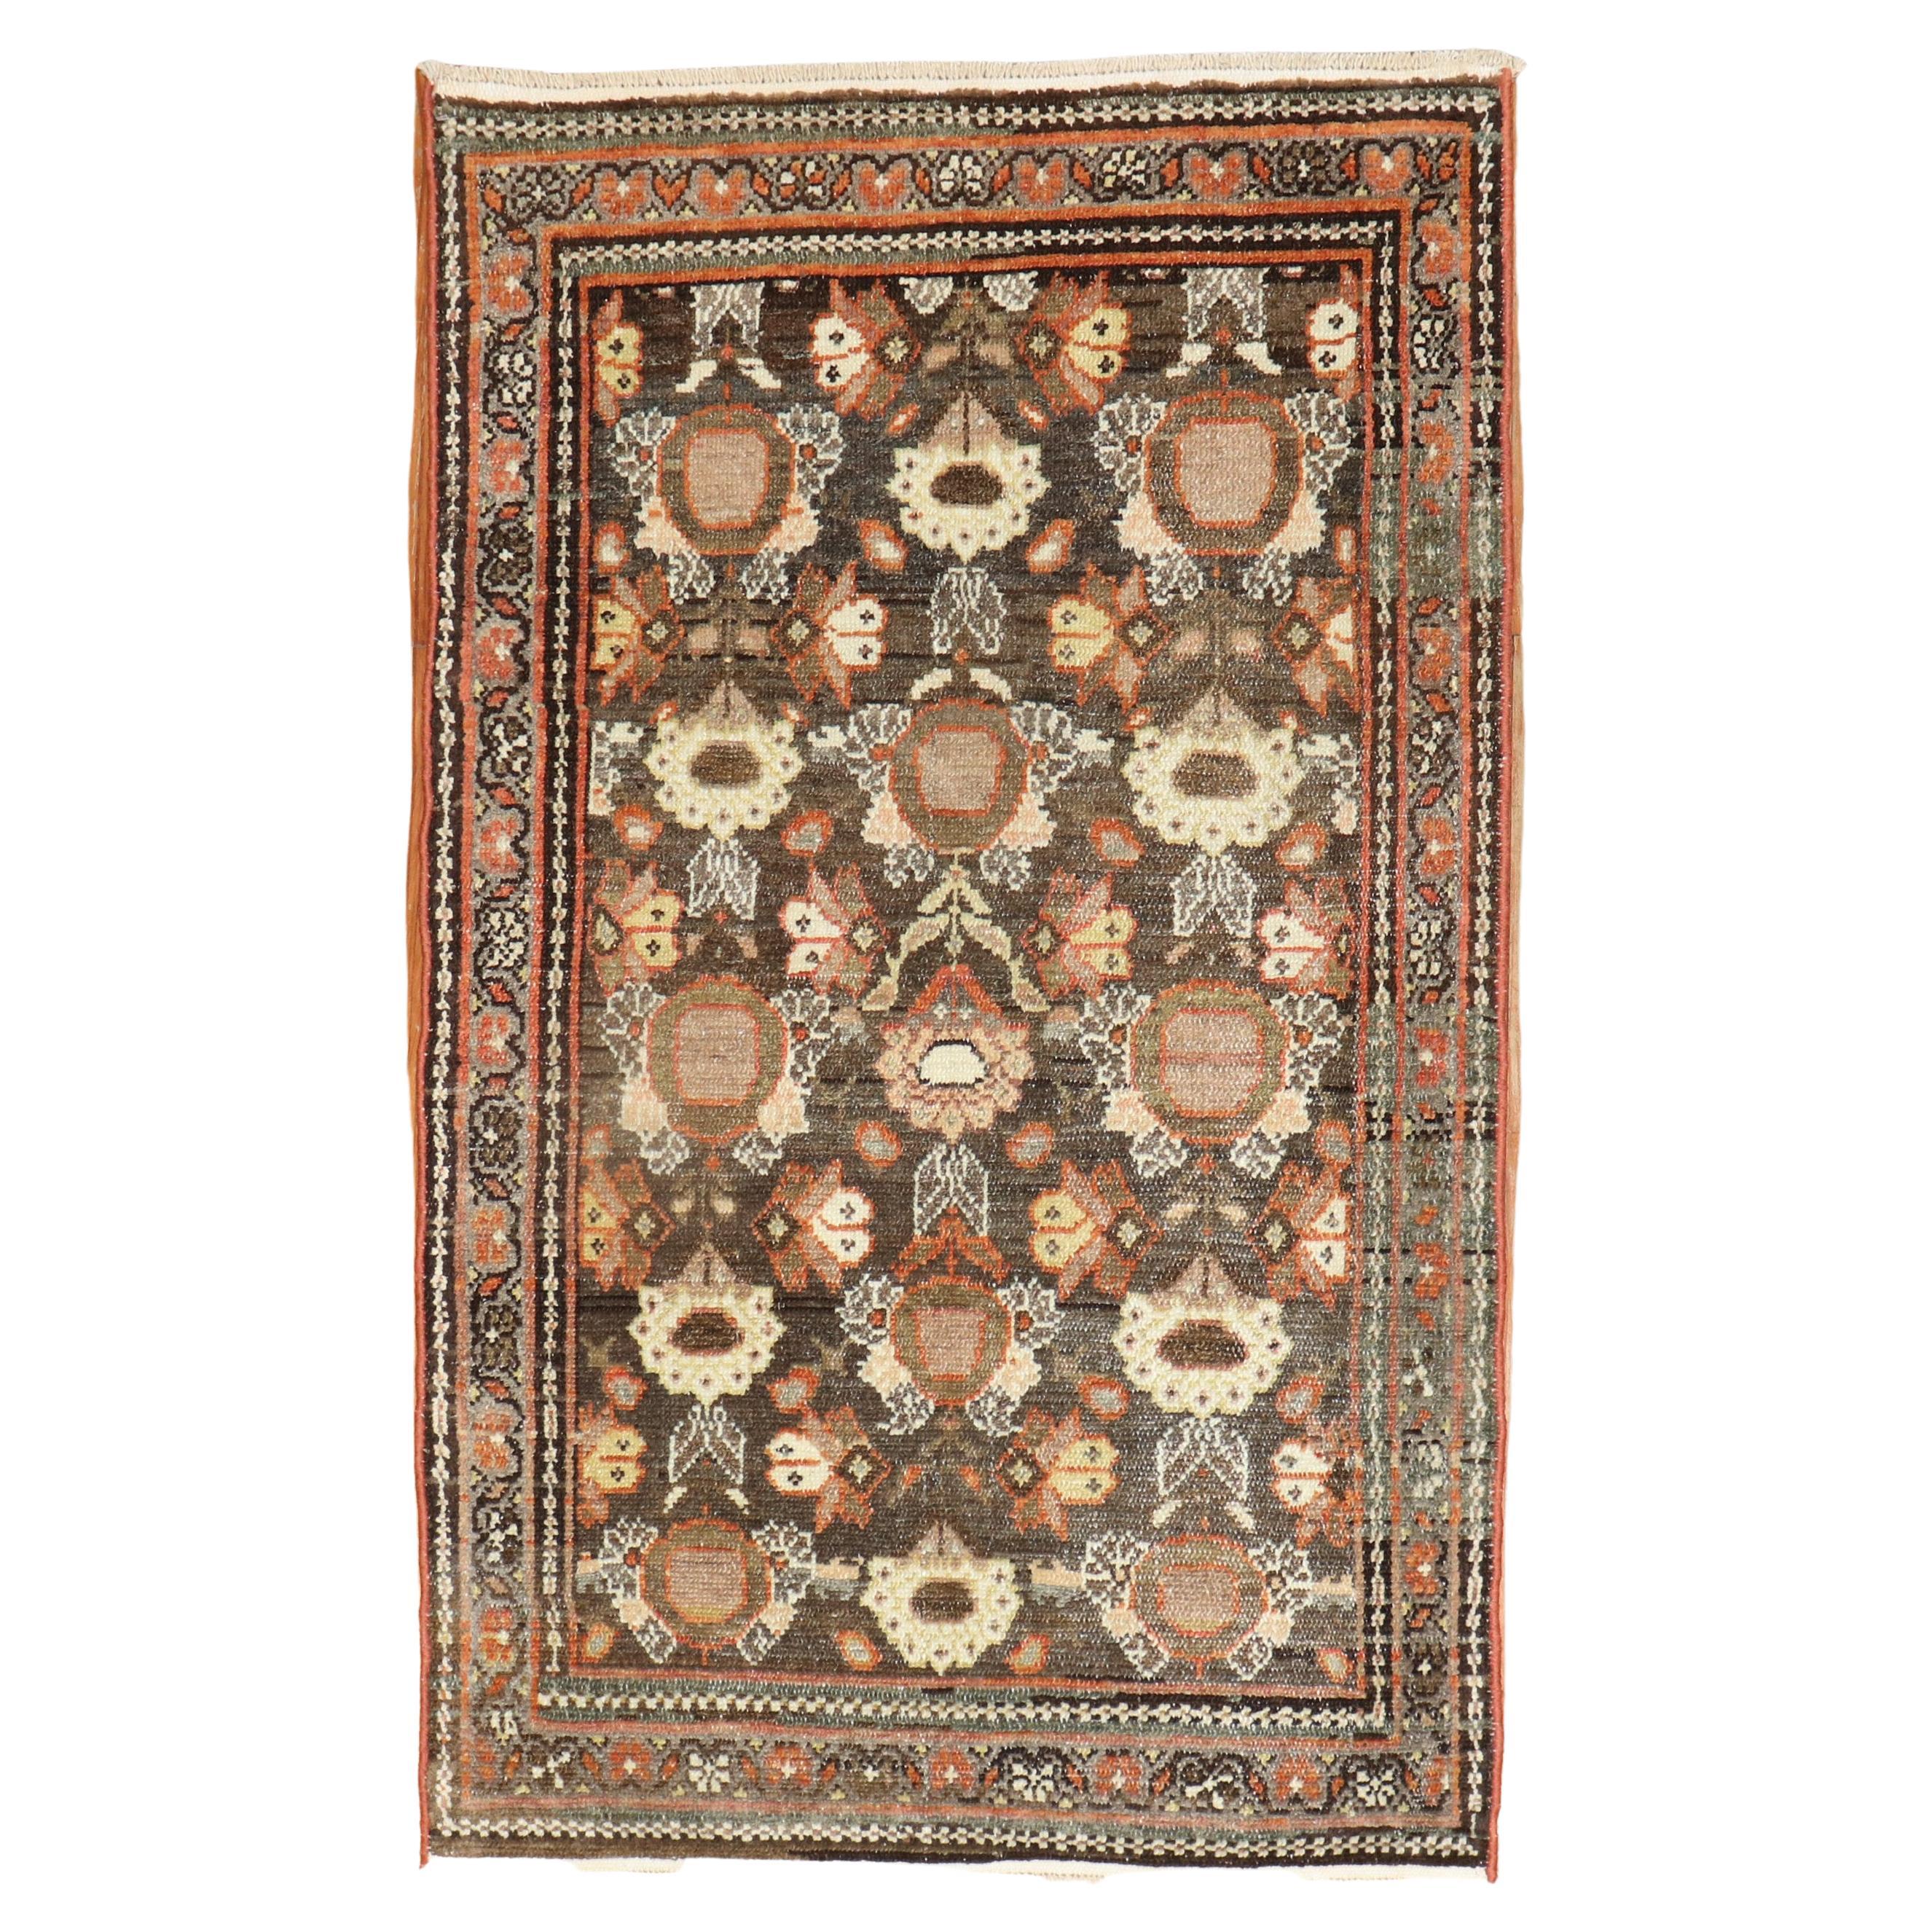 Brauner persischer Mahal-Überwurfteppich aus der Zabihi-Kollektion